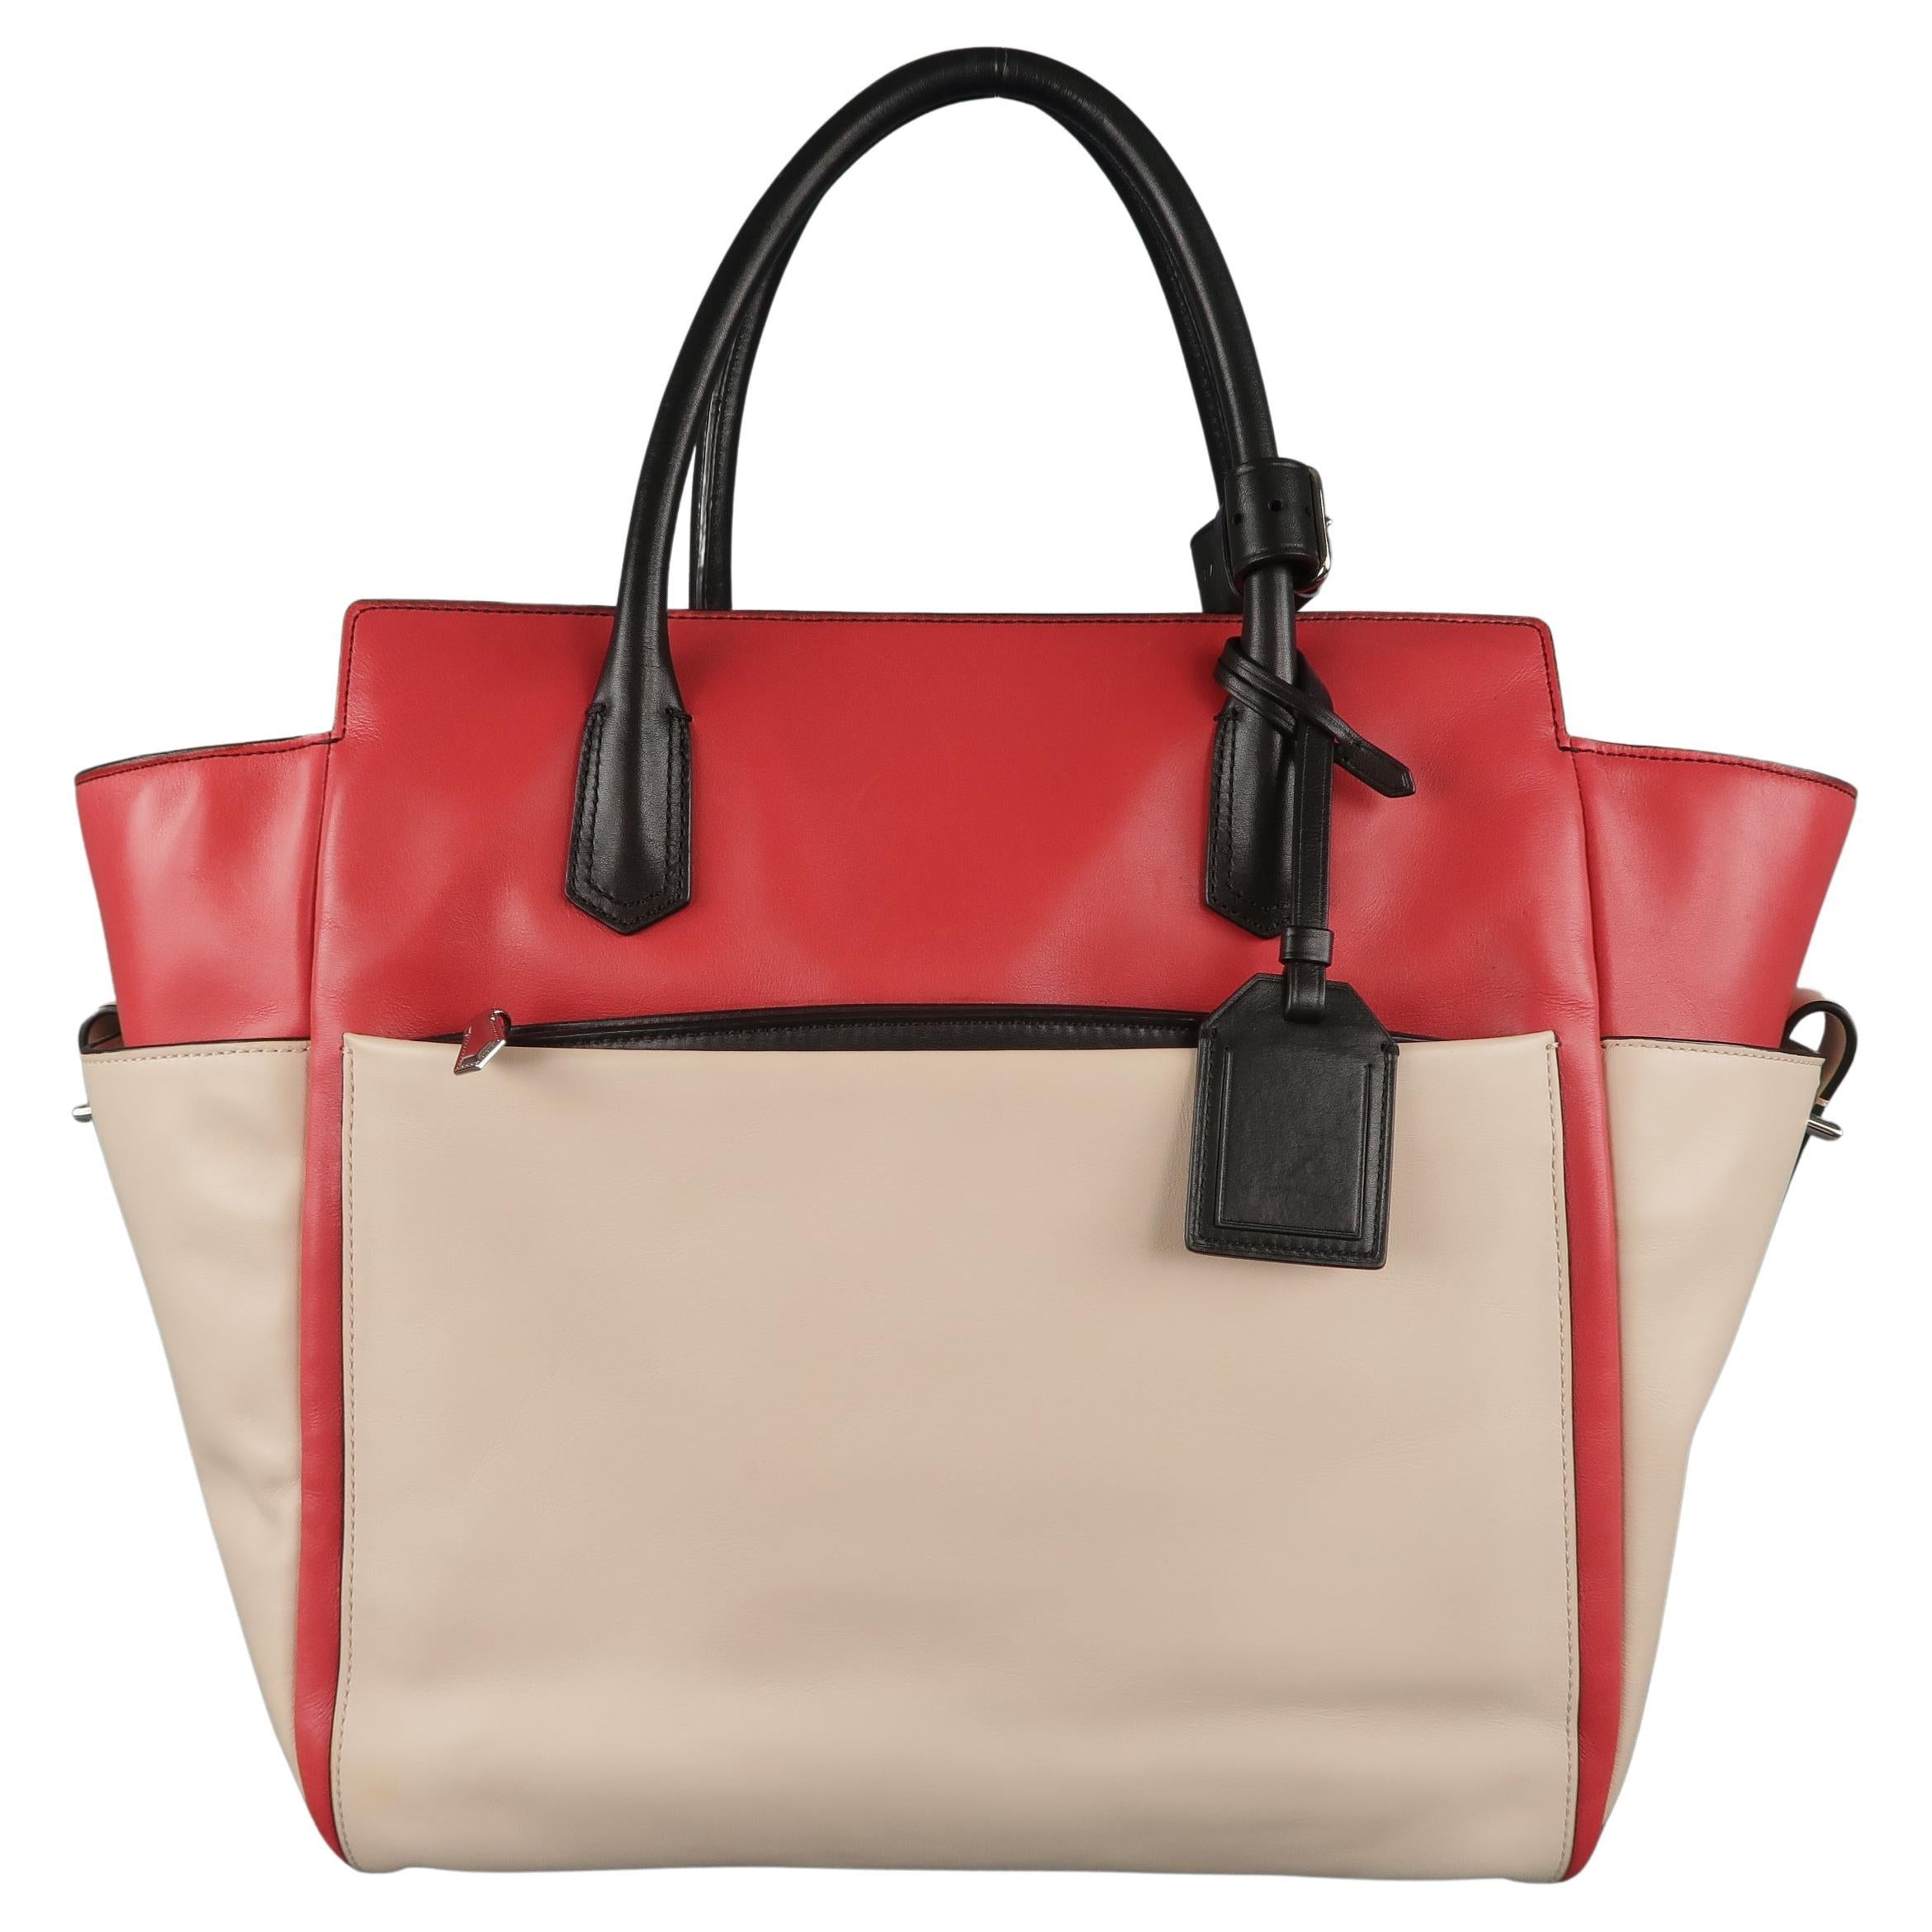 REED KRAKOFF Red Black & Light Pink Leather Tote Handbag For Sale